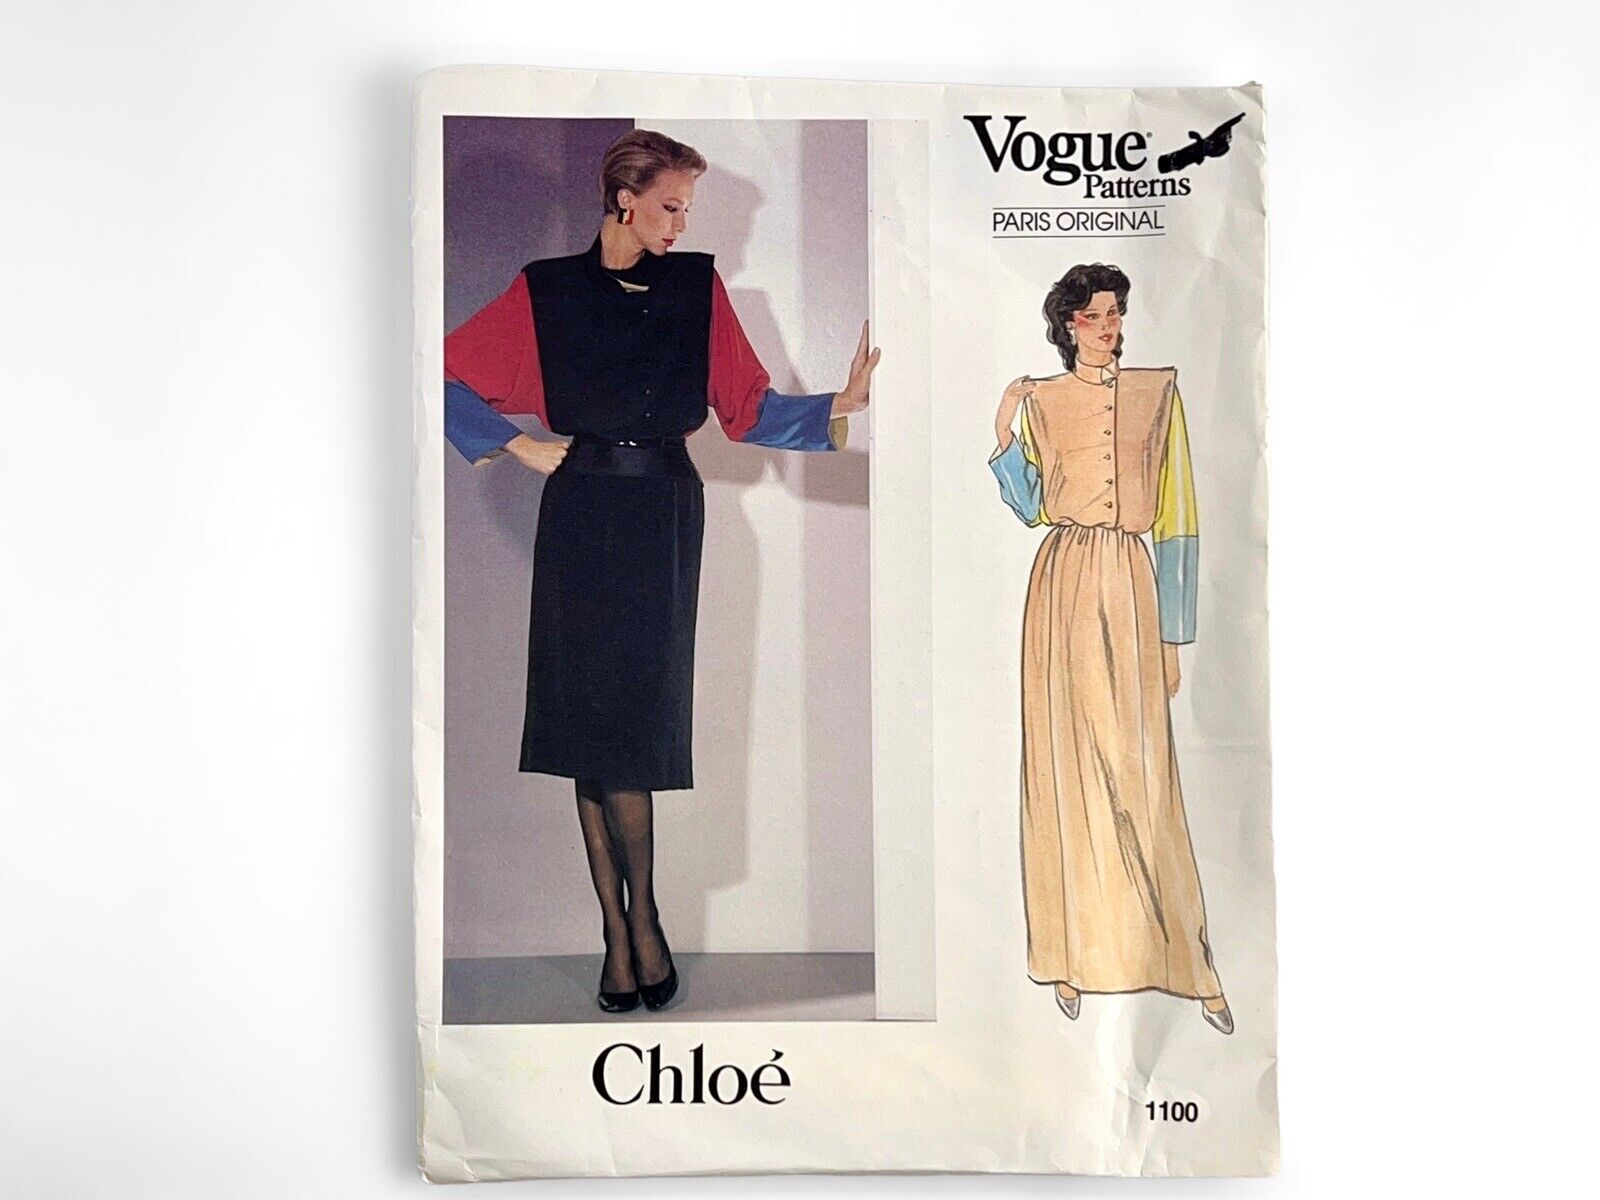 Vtg 1980s Vogue CHLOE’ Paris Original Dress Pattern #1100 Size 12 Uncut